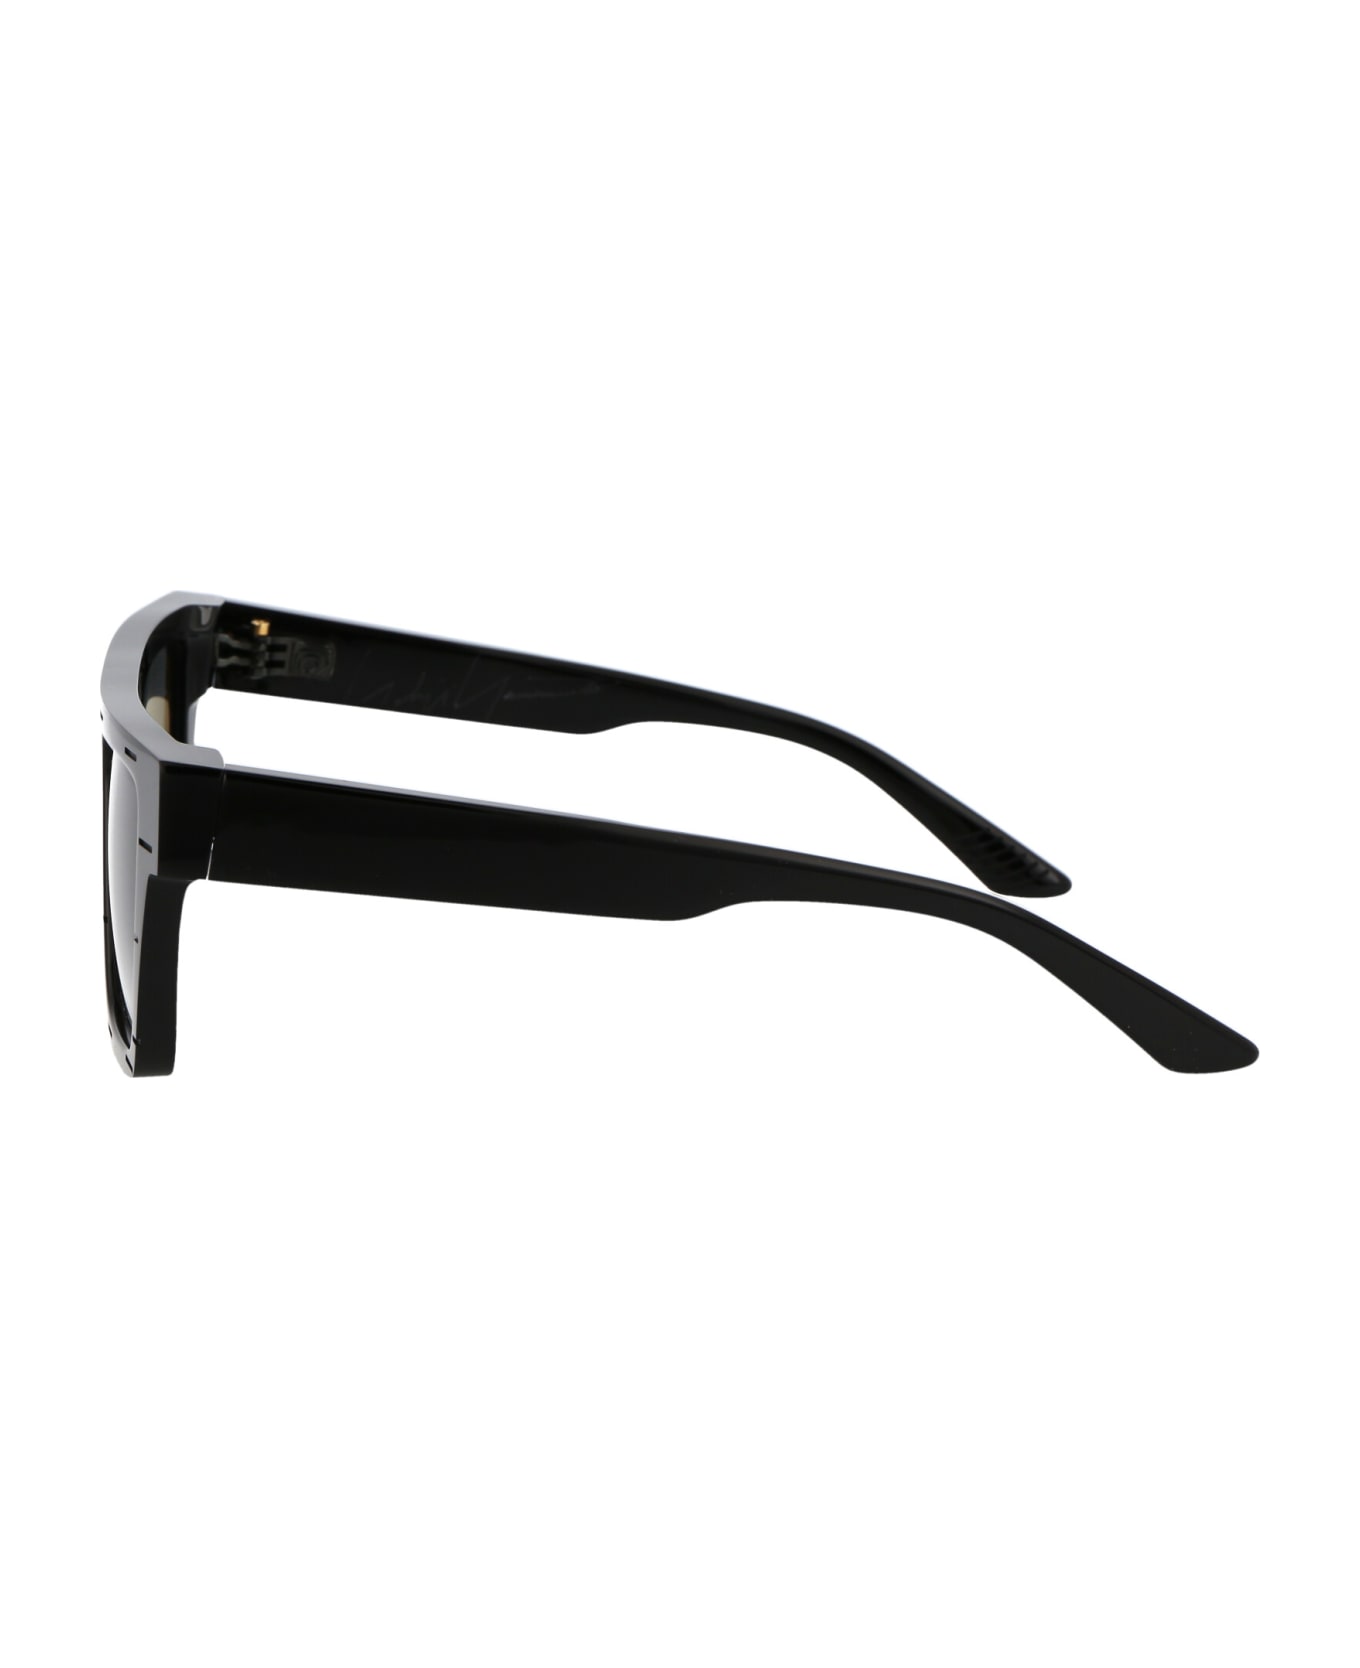 Yohji Yamamoto Slook 002 Sunglasses - boss brown sunglasses